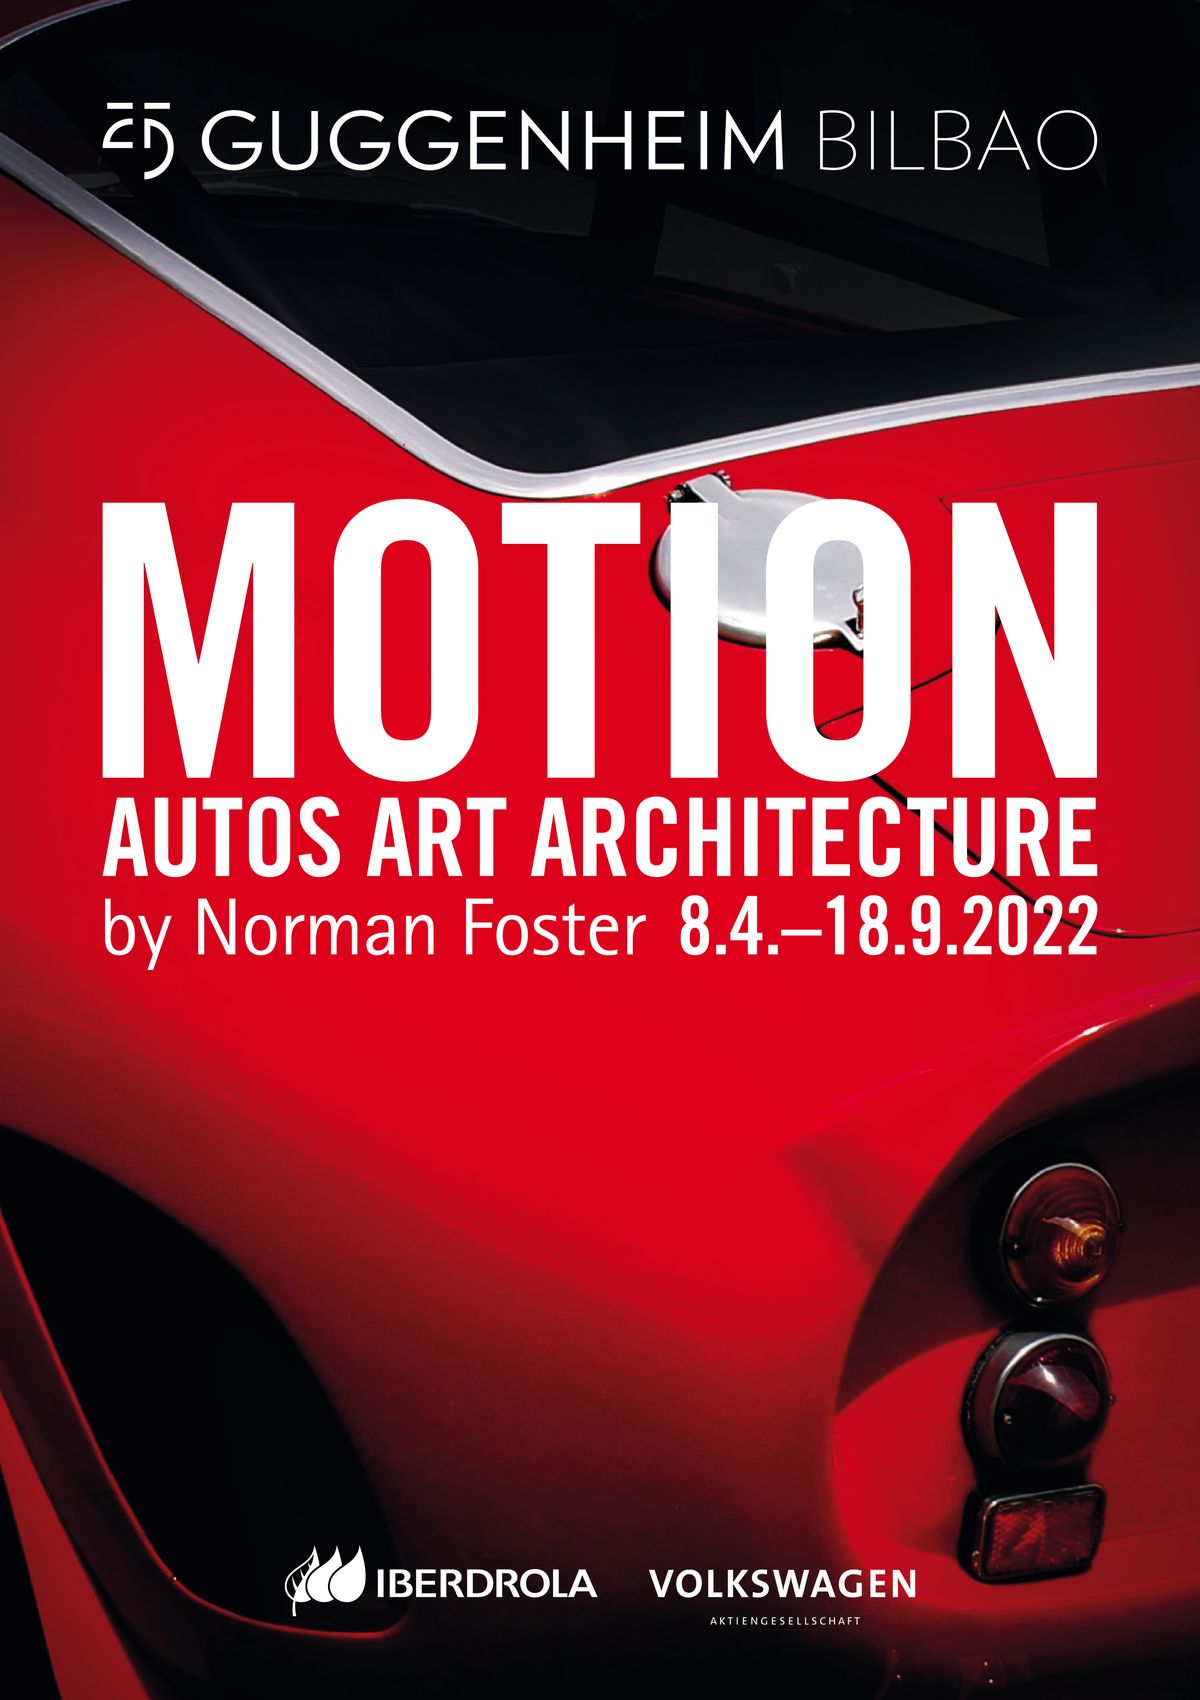 Guggenheim in Motion - Autos, Art, Architecture